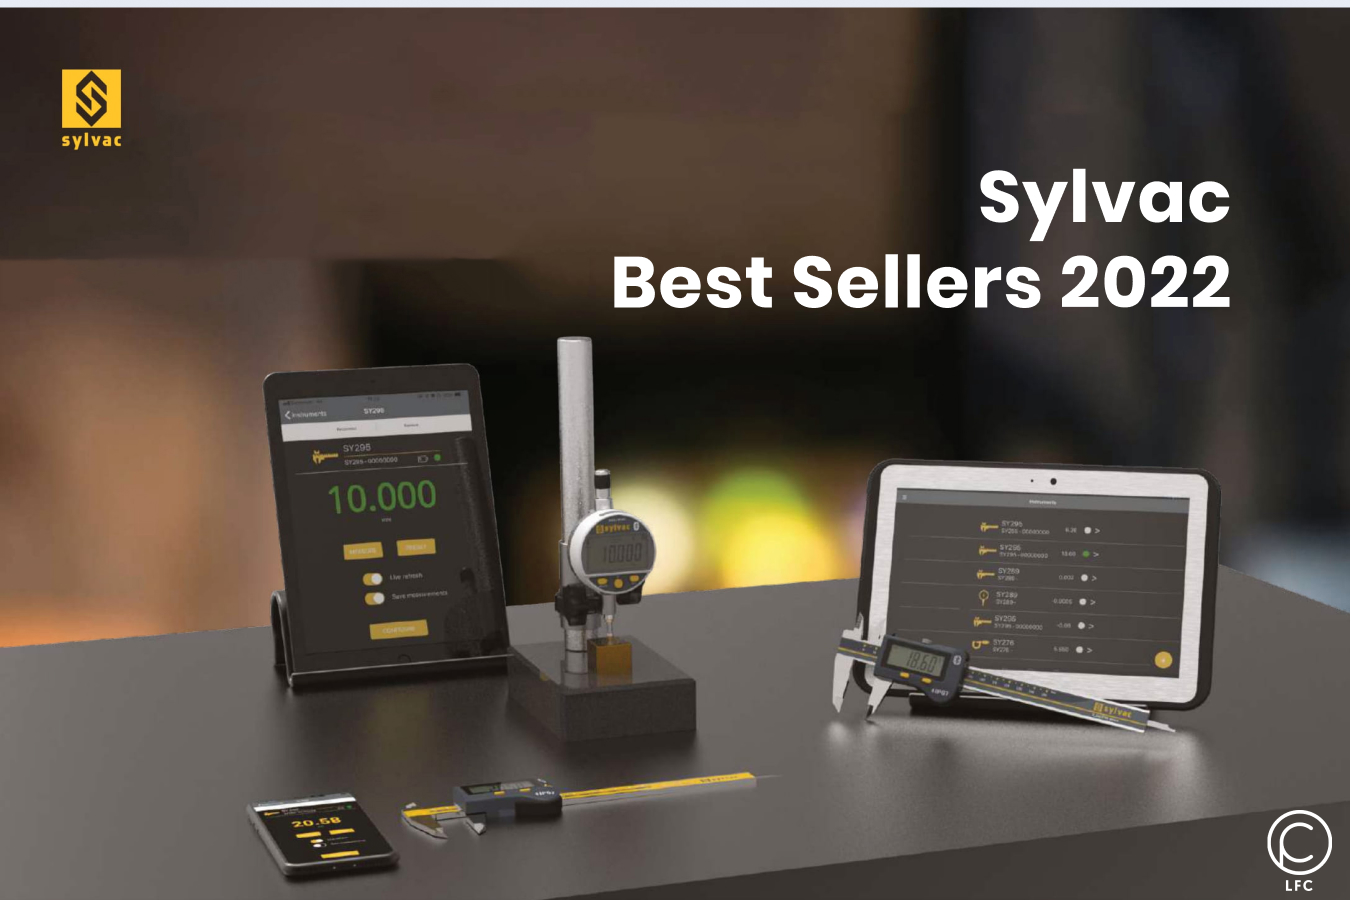 Sylvac Best Sellers 2022